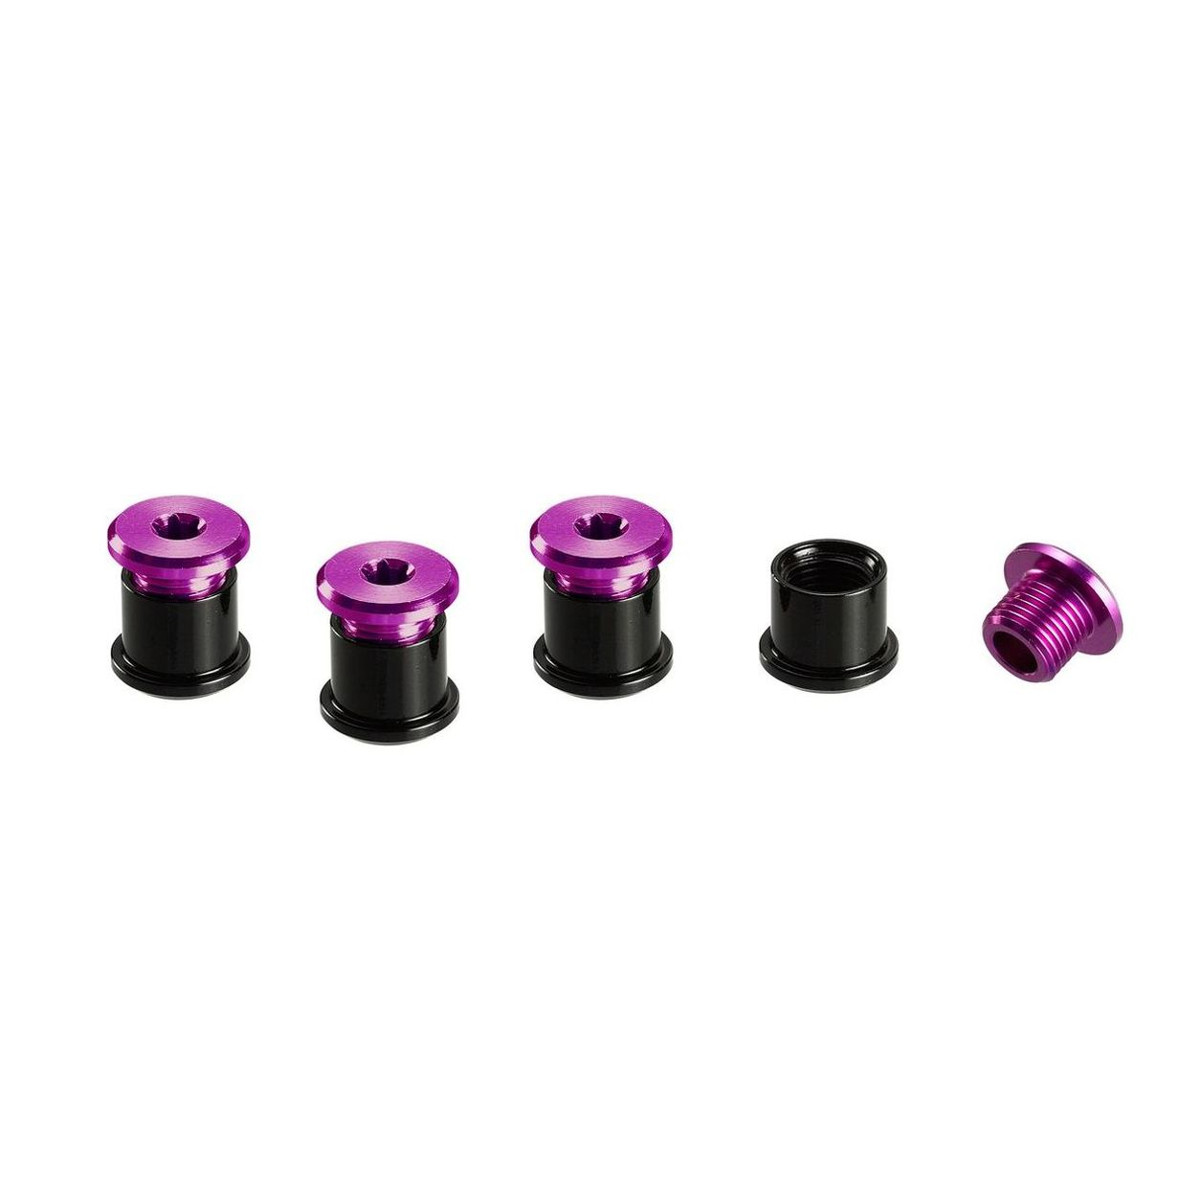 E*thirteen Kit de Vis Cheminée  Purple, Aluminium, T25 6 mm Screws/ T30 7,5 mm Nuts, 4 pcs each